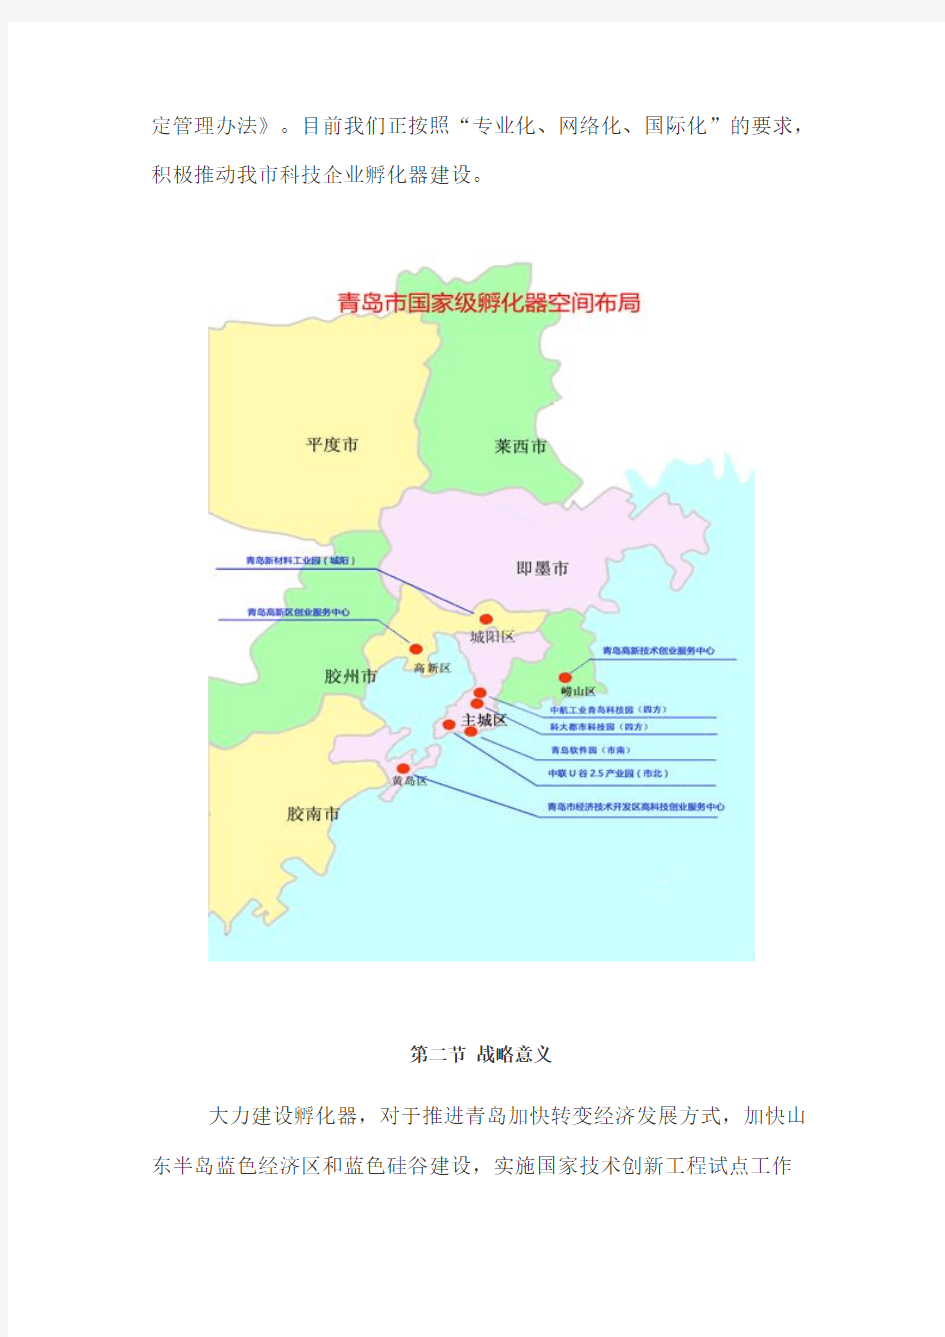 [VIP专享]青岛市孵化器发展规划纲要(2012-2016)